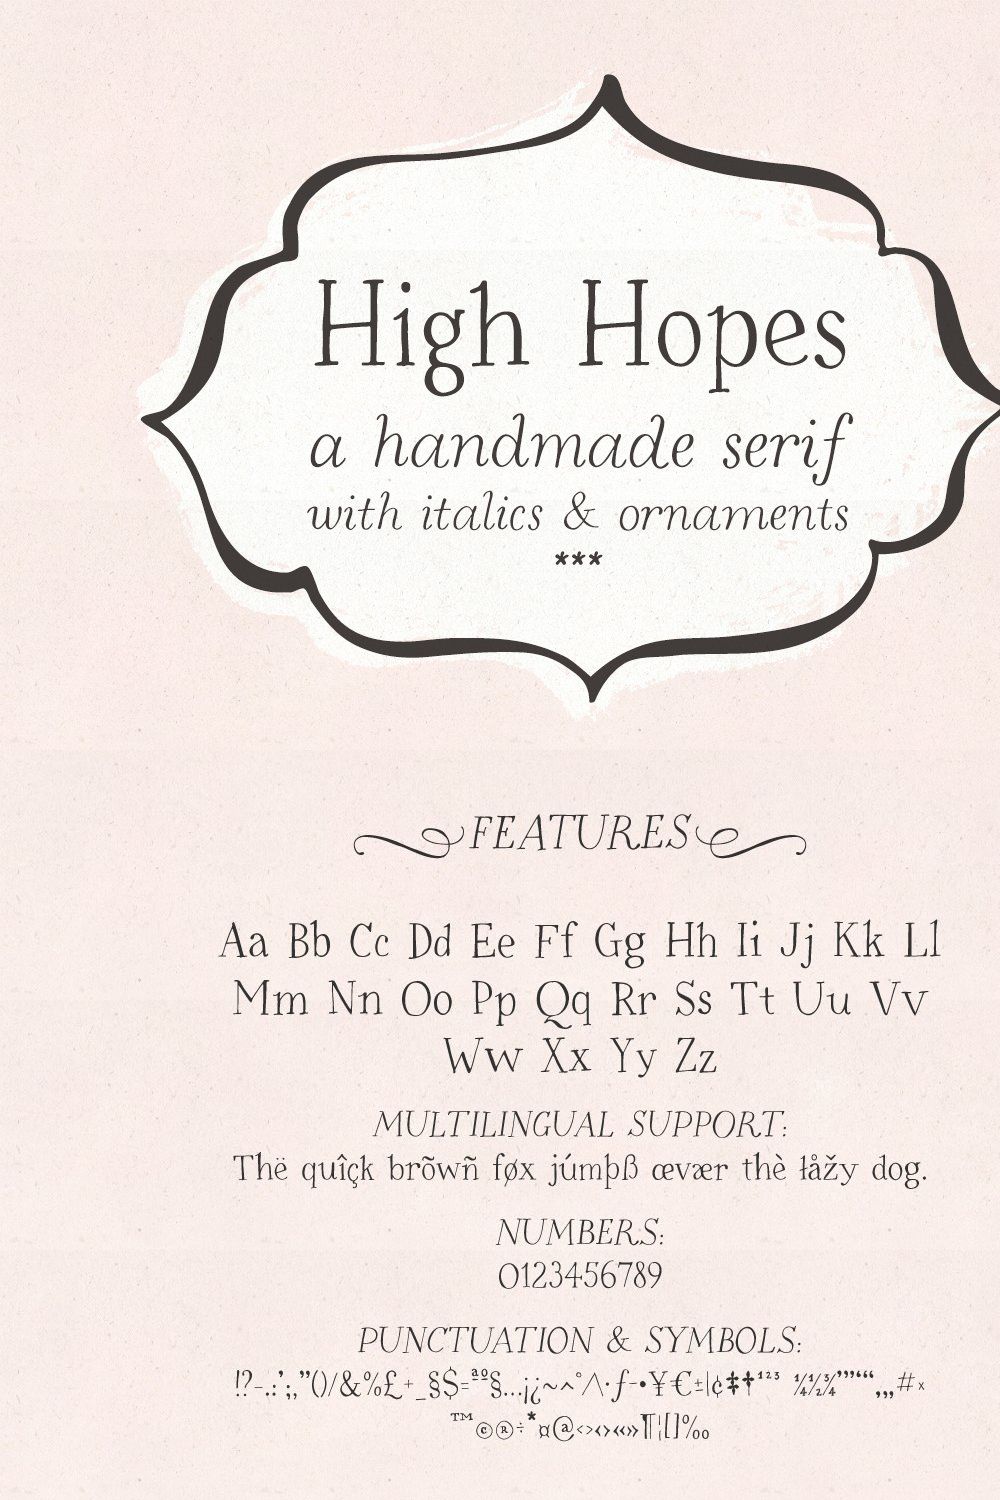 High Hopes handmade serif font pinterest preview image.